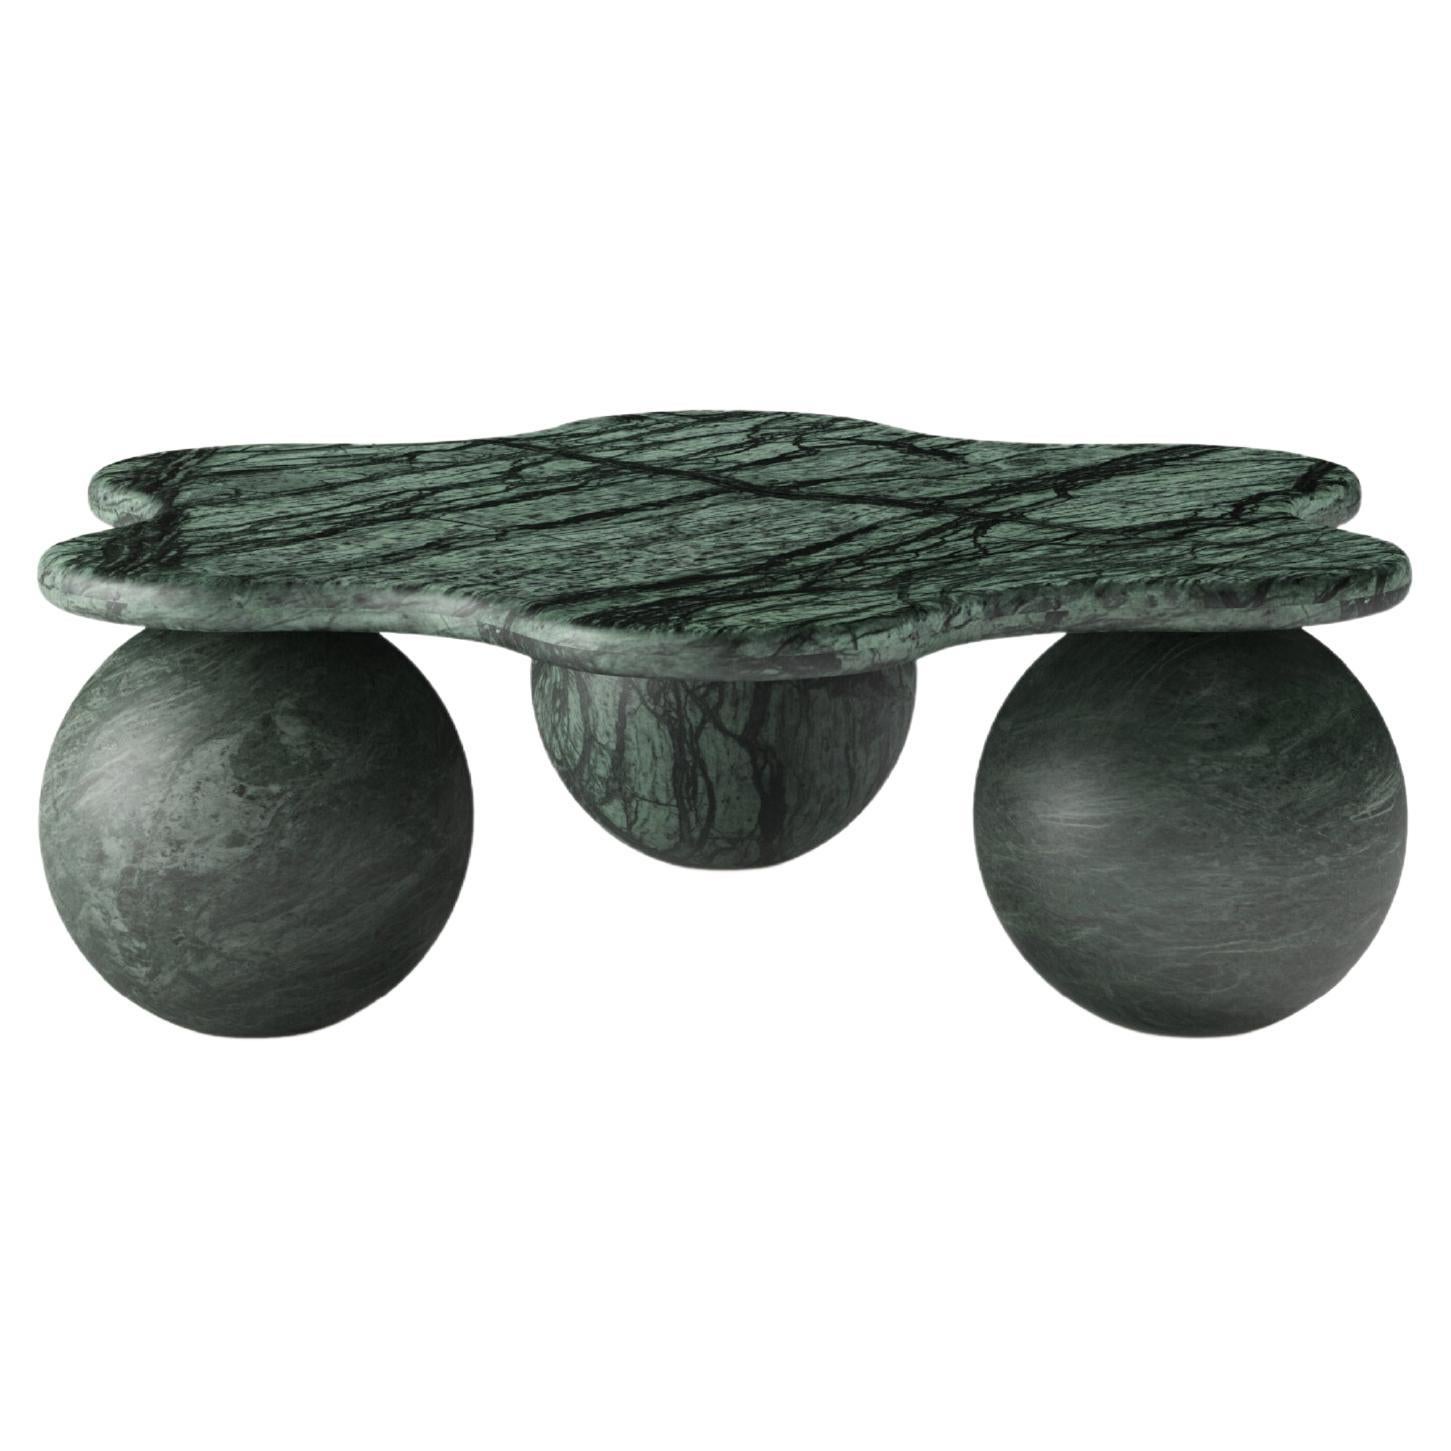 FORM(LA) table basse ronde Palla 42 po. (L) x 38 po. (L) x 13 po. (H) marbre Verde Guatemala